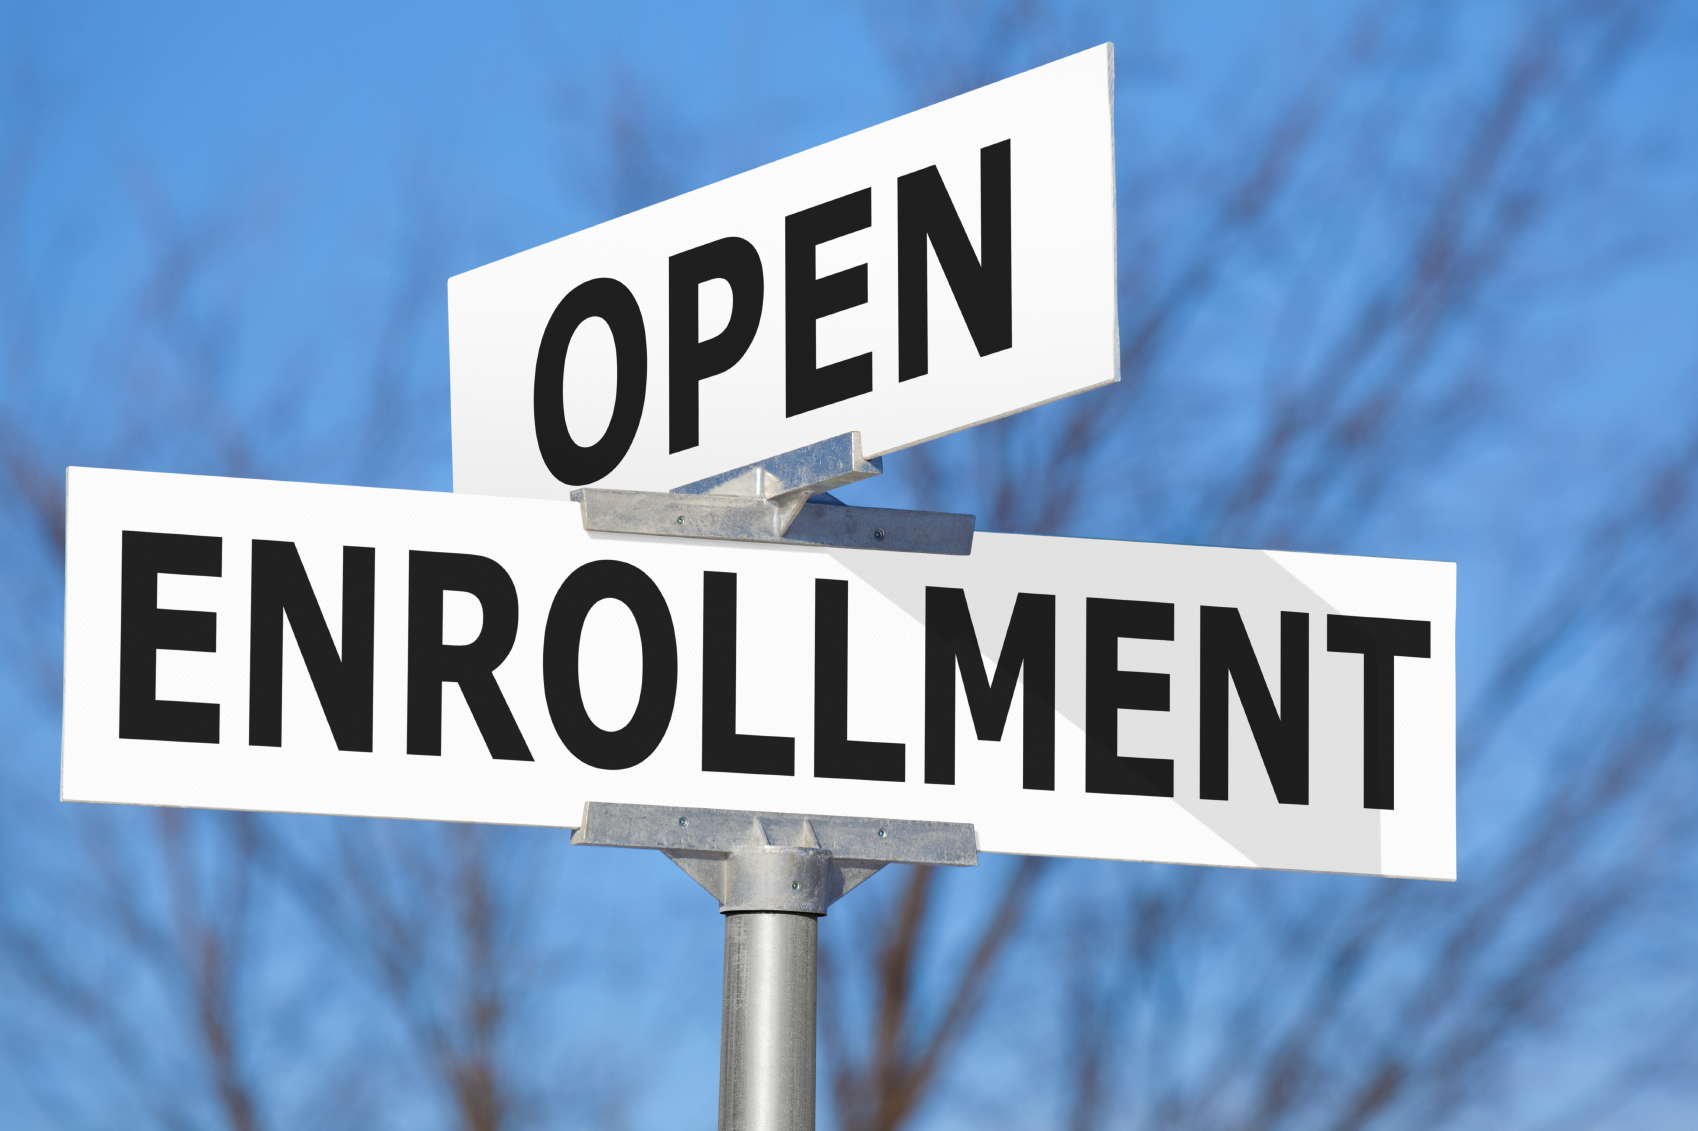 Medicare Open Enrollment 2014